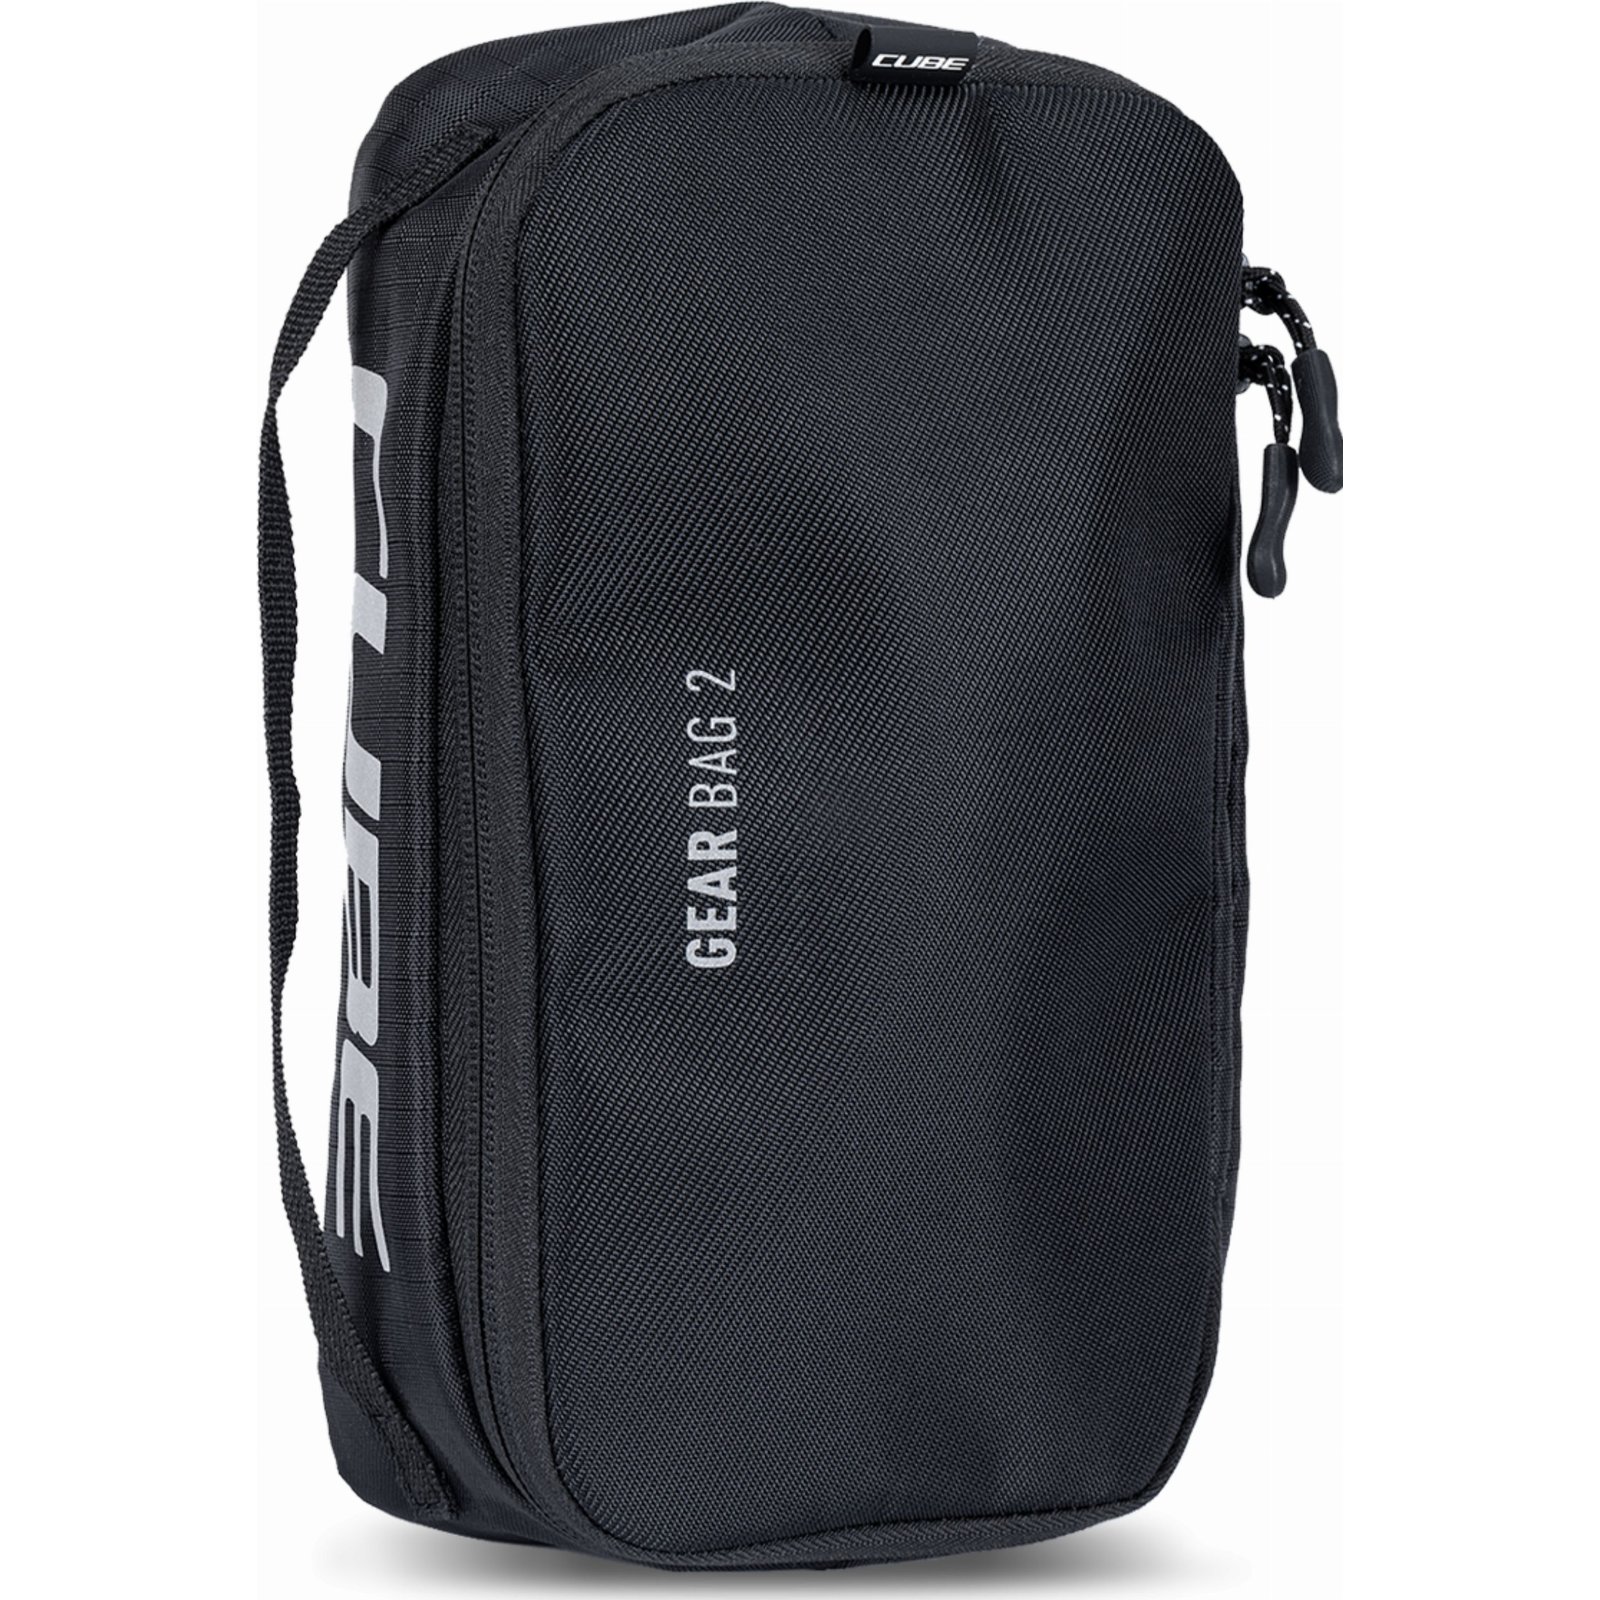 Cube Gear Bag Zubehrtasche black 2 L